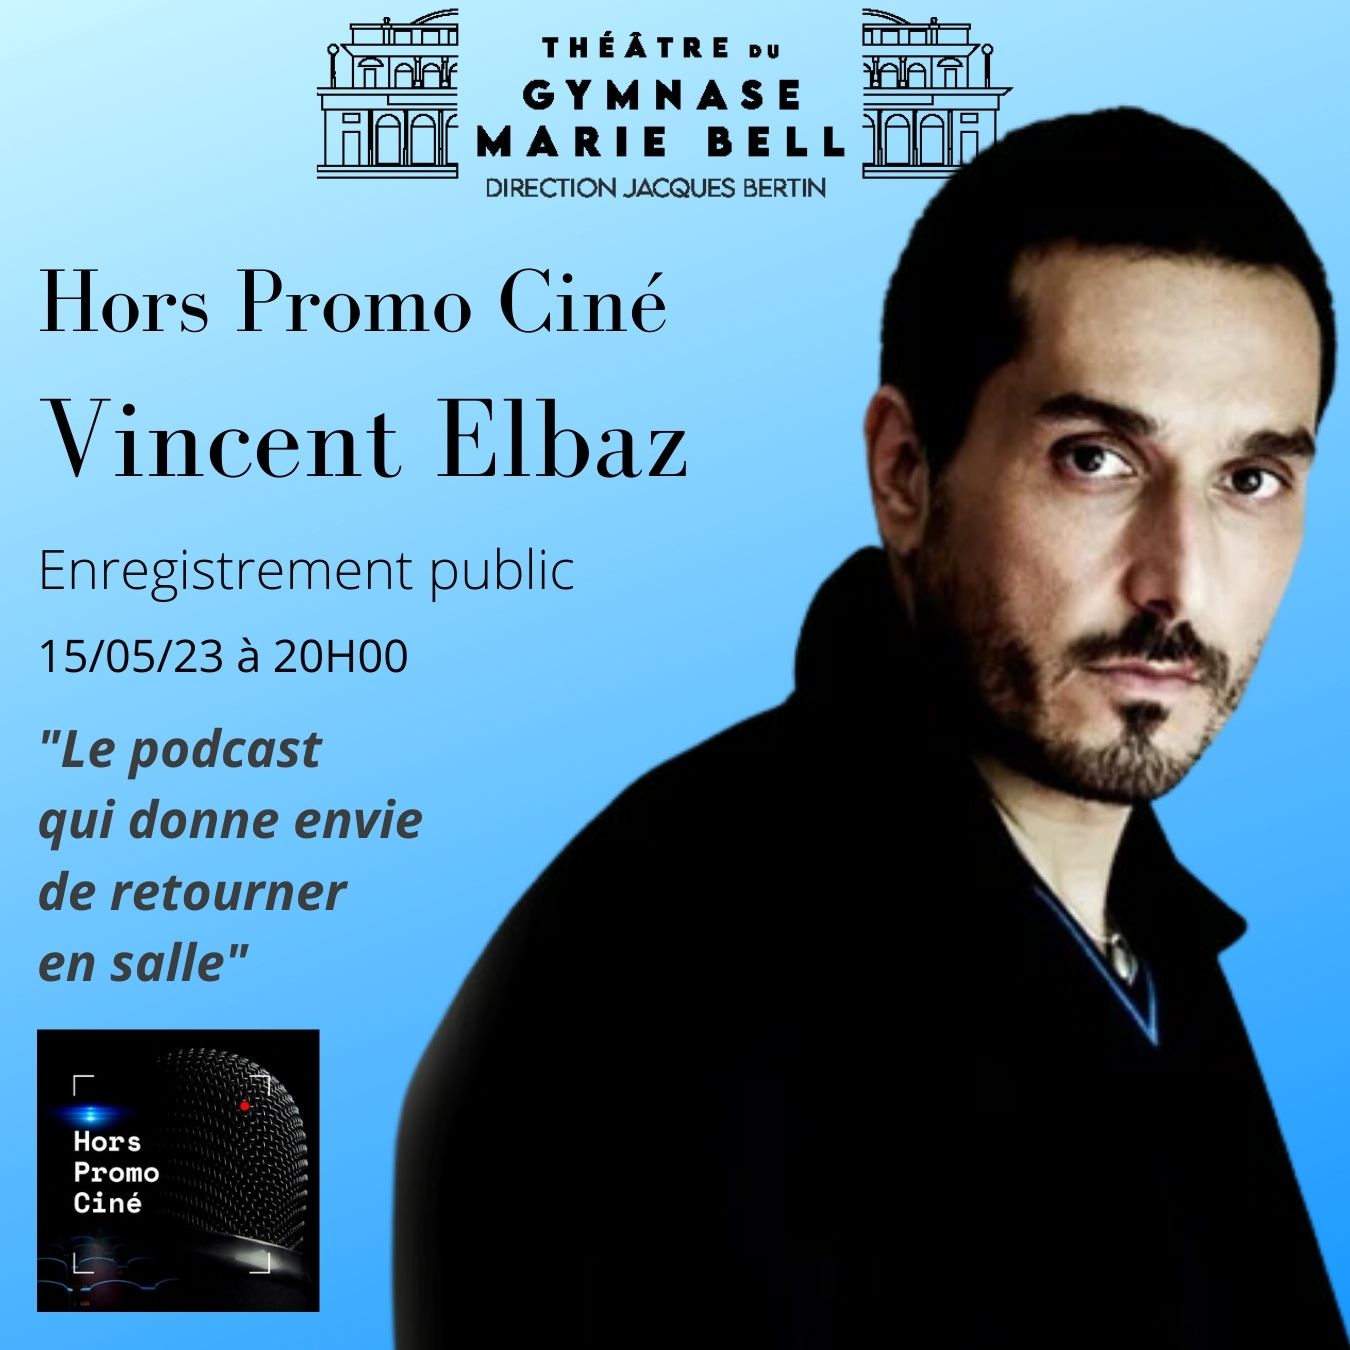 Hors Promo Ciné-Vincent Elbaz